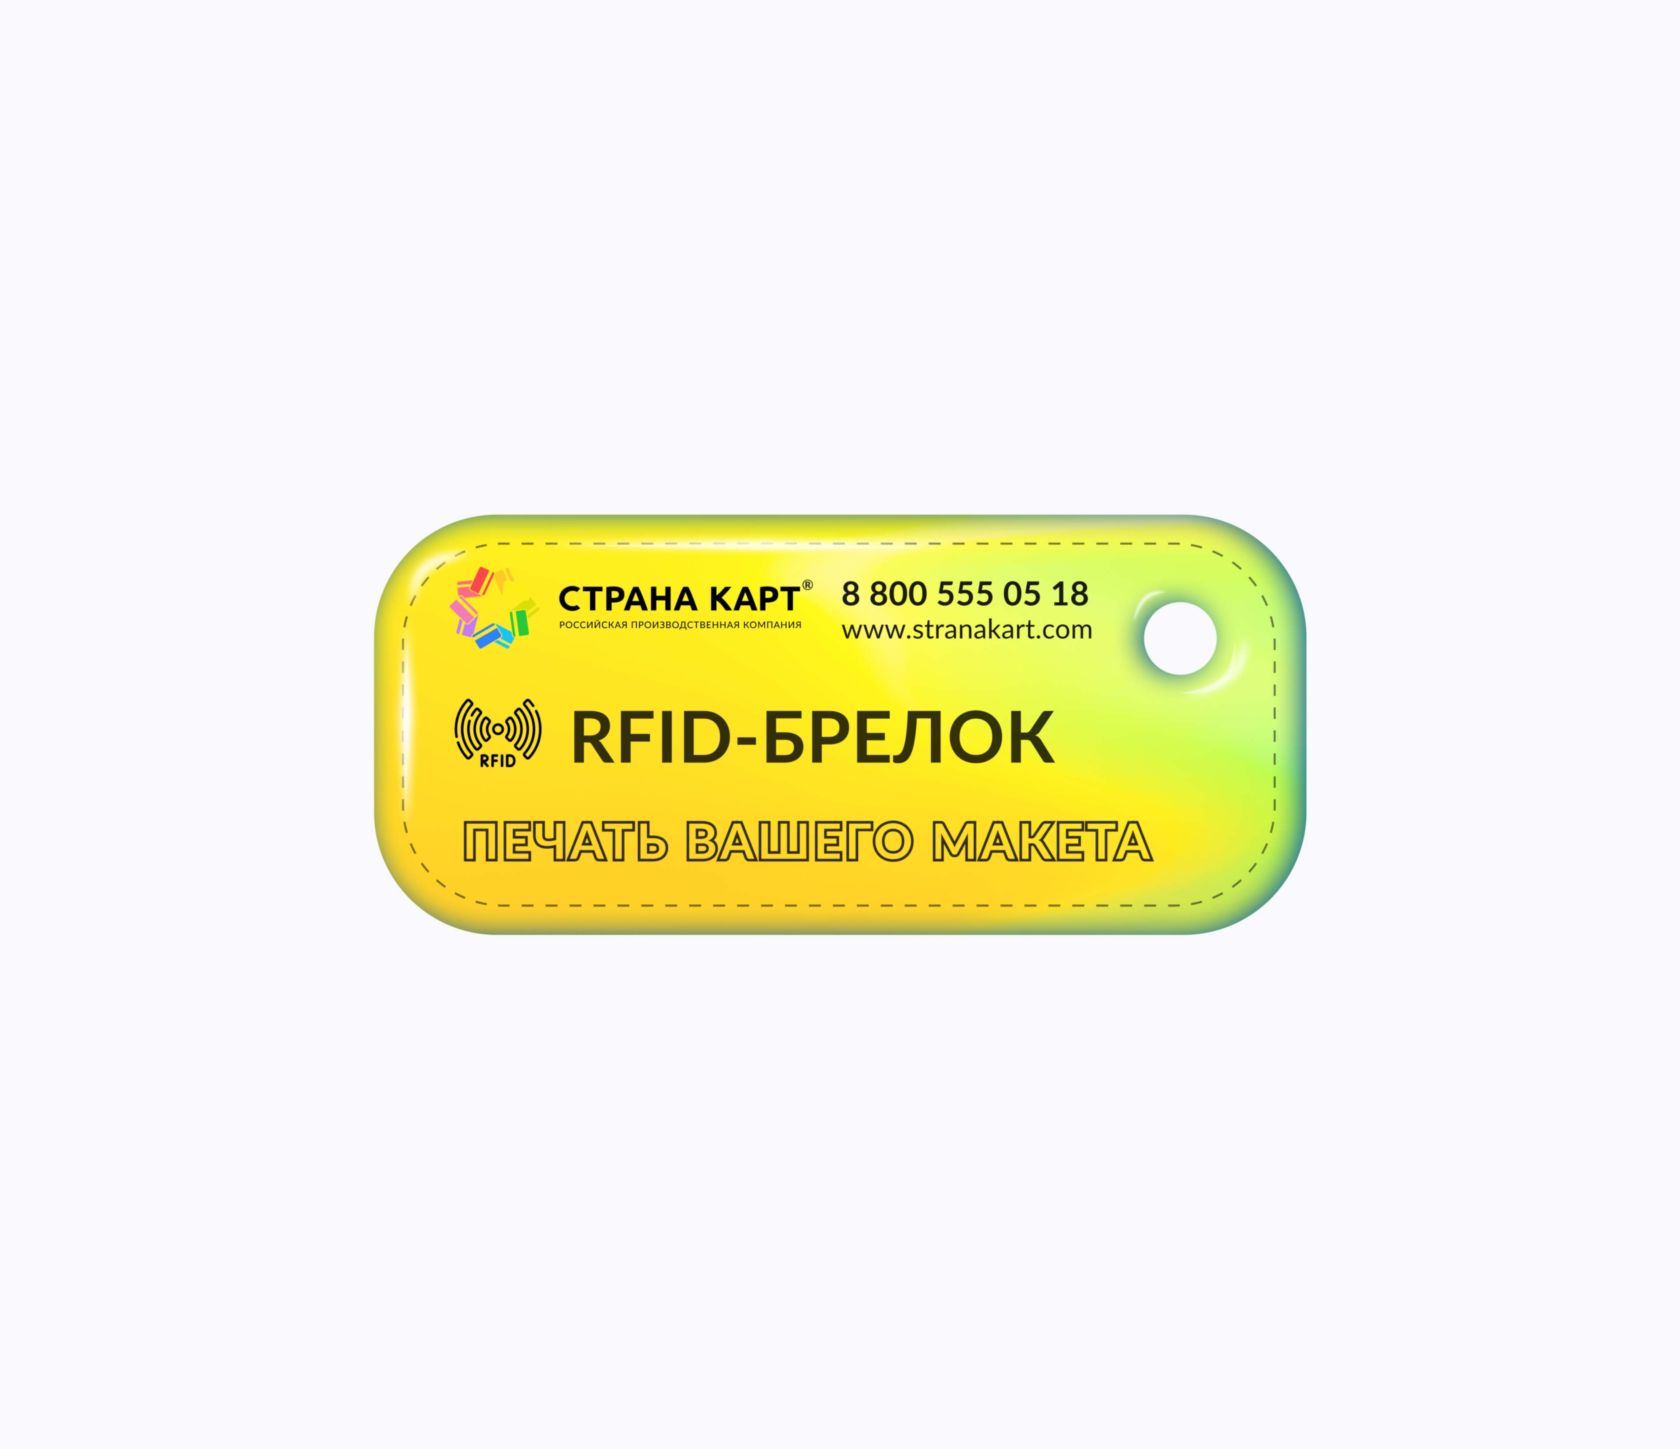 Прямоугольные Мини RFID-брелоки NEOKEY® с чипом для парков развлечений RFID-брелоки NEOKEY® с чипом для парков развлечений